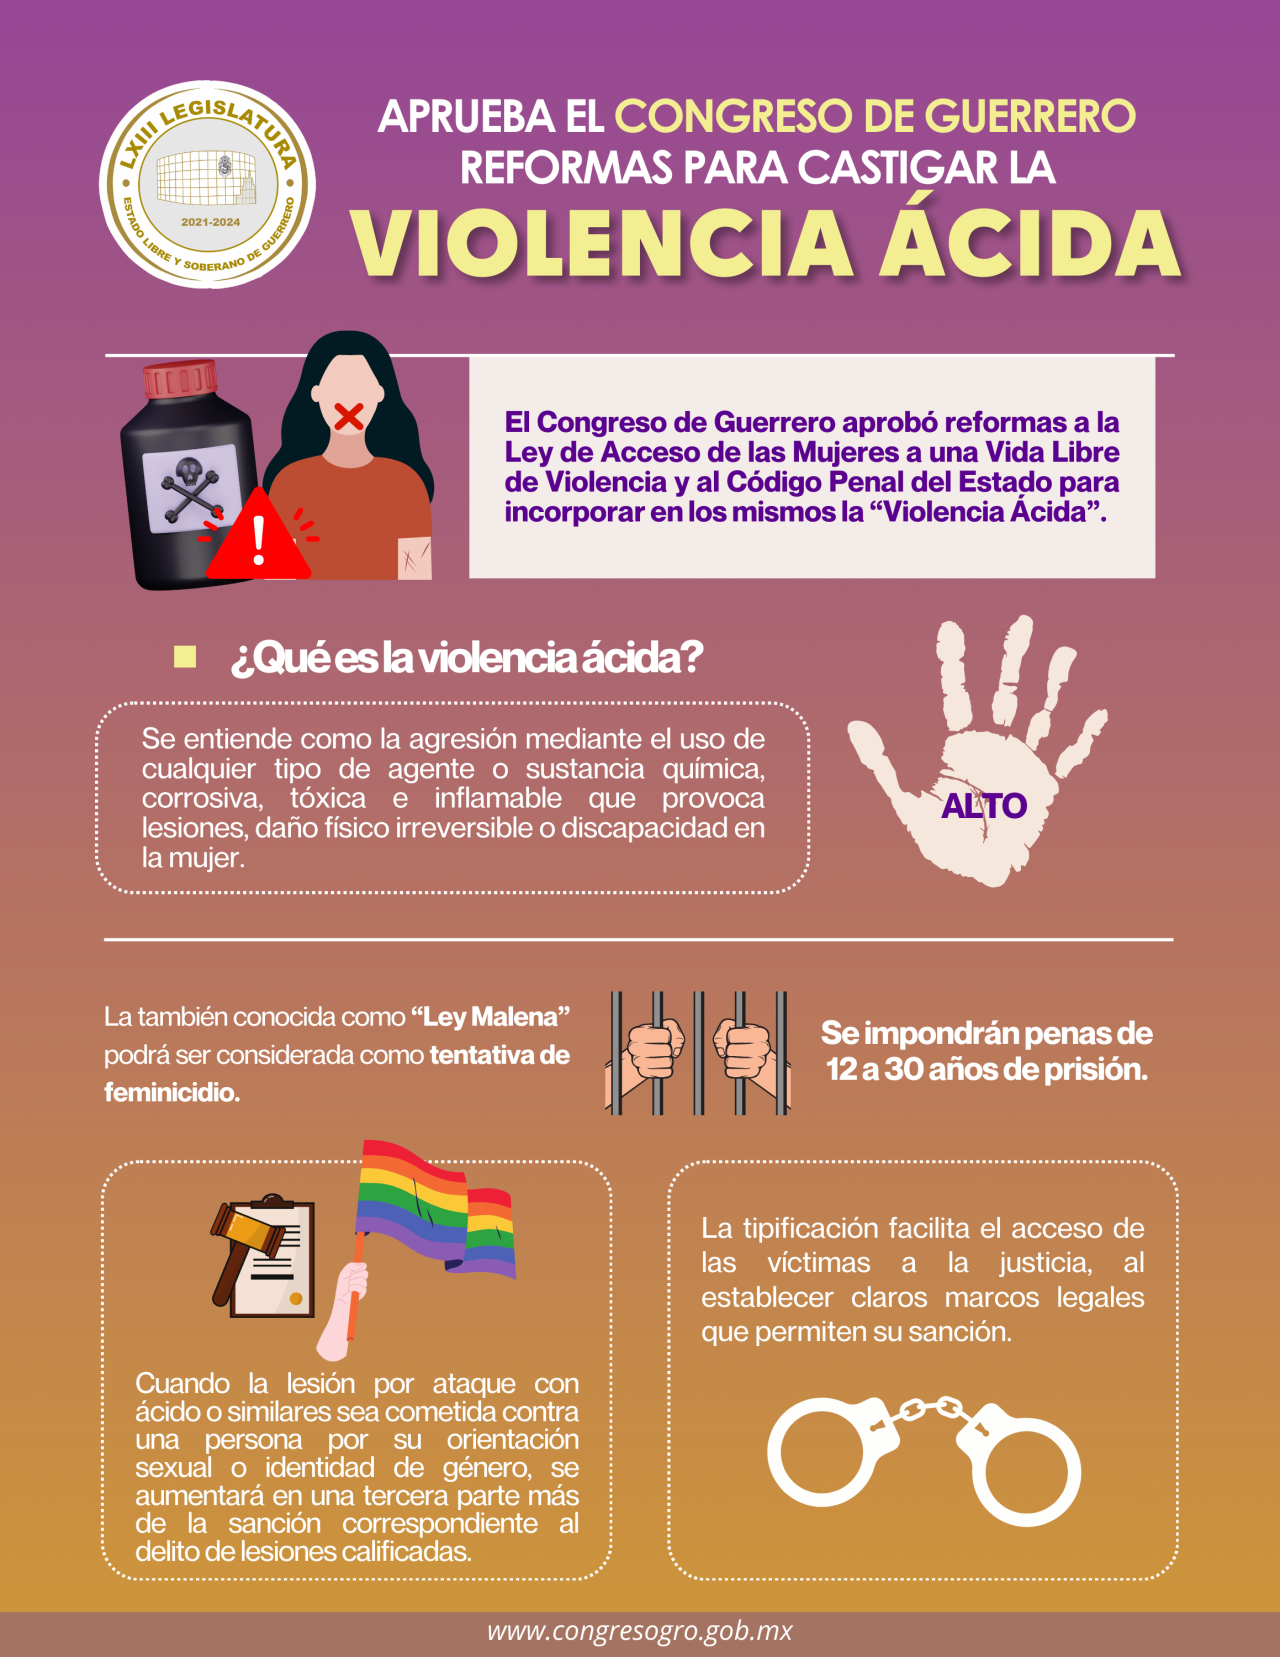 Aprueba el Congreso de Guerrero reformas para castigar la Violencia Ácida